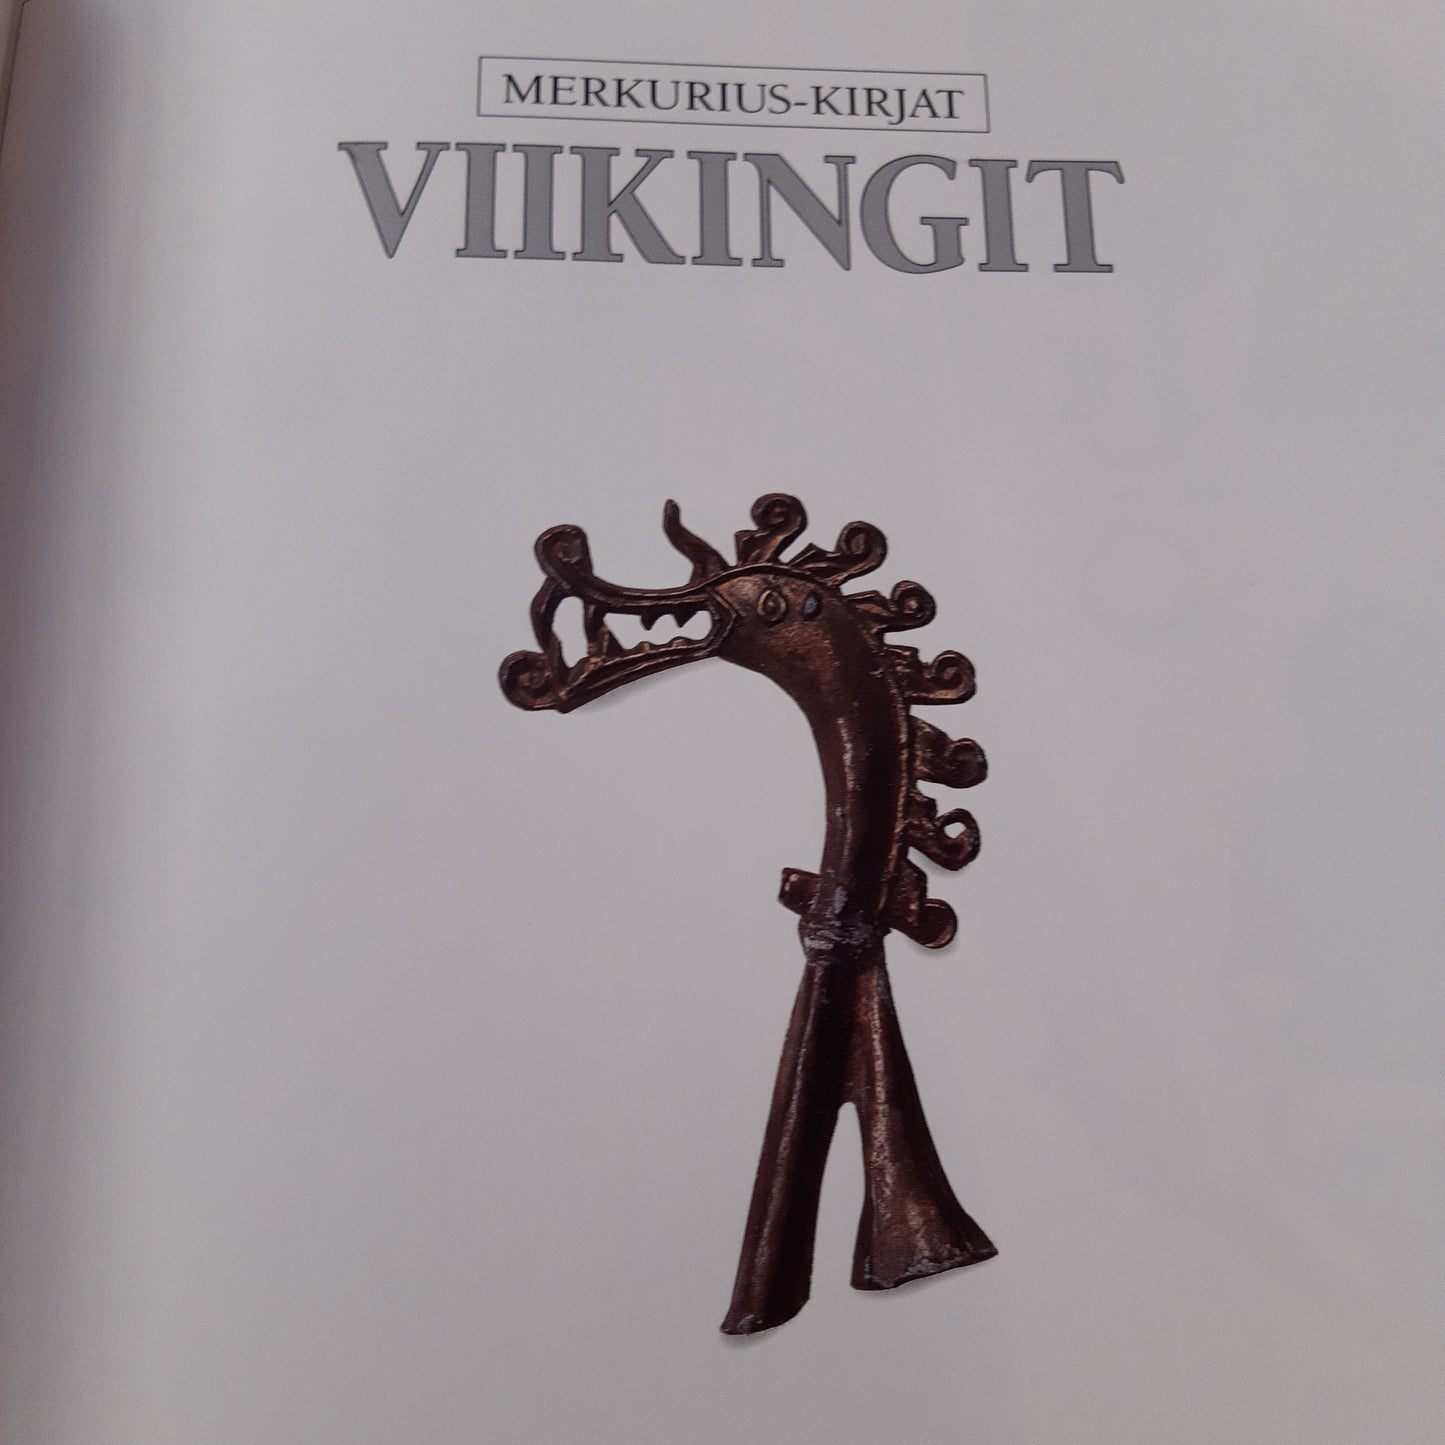 viikingit